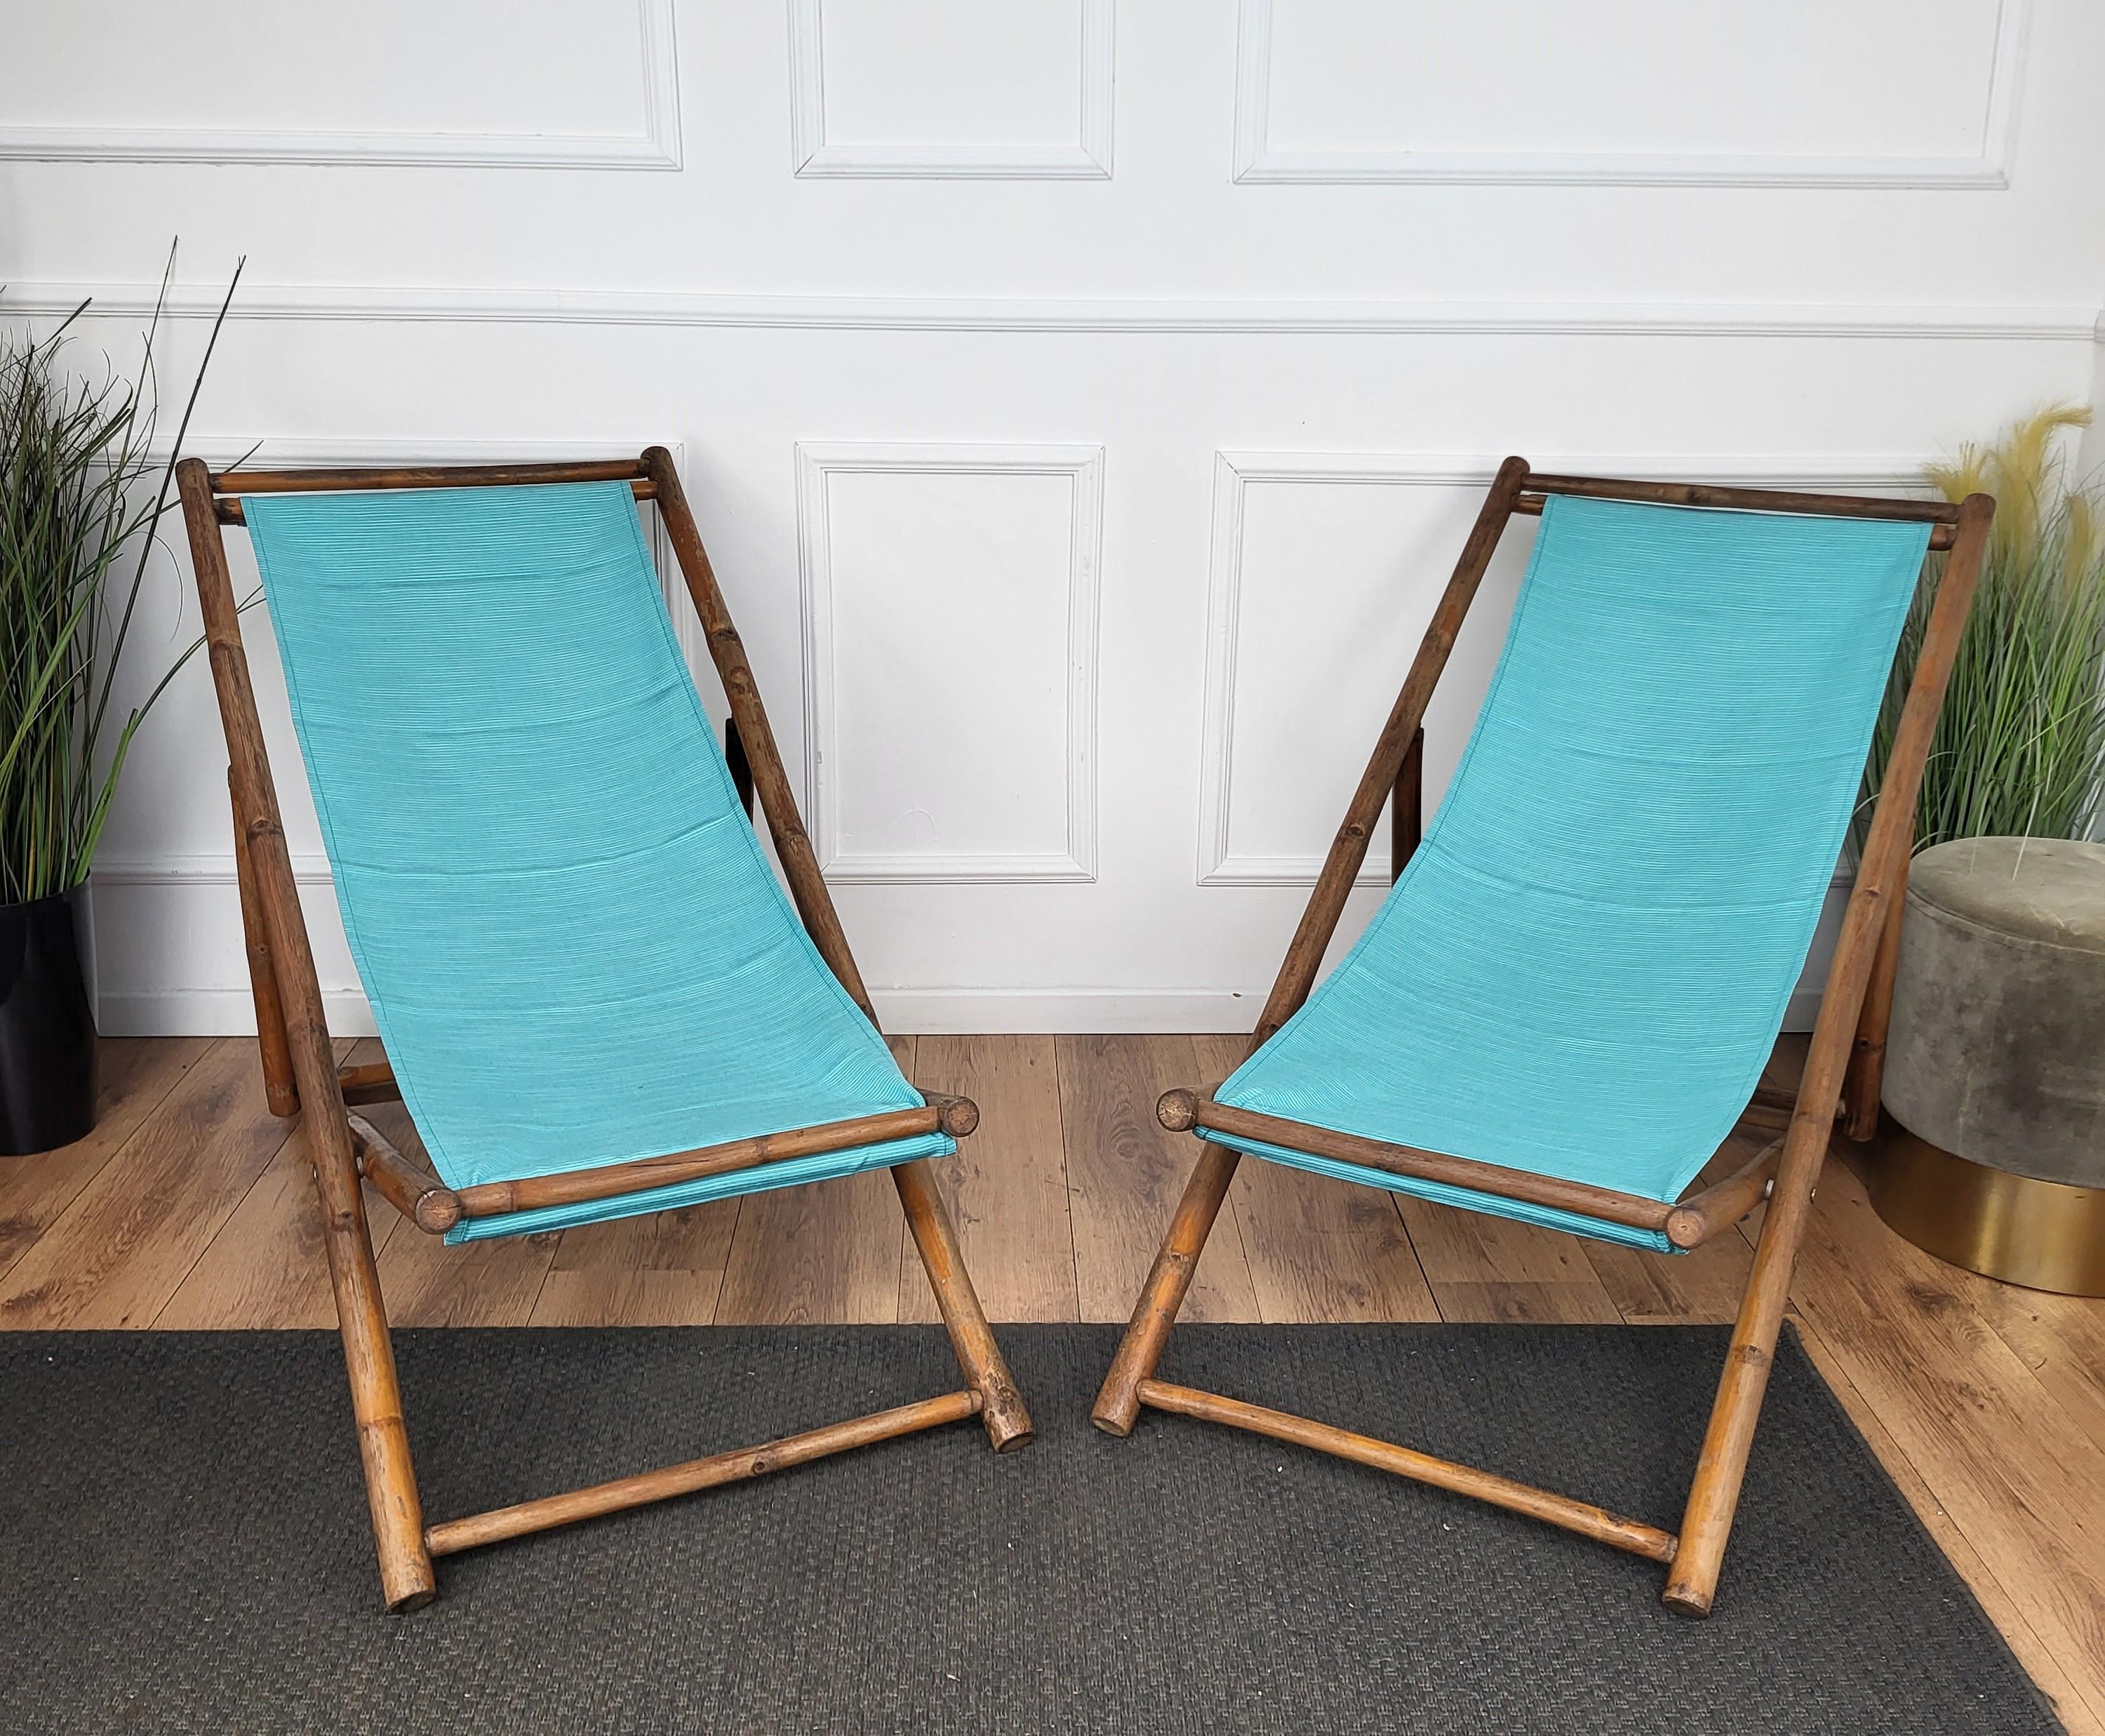 Chaise longue ou chaise longue pliante, avec 3 positions différentes. Très confortable pour le patio ou le jardin. Le tissu est en bon état mais peut facilement être changé. Nous en avons 6 de disponibles.